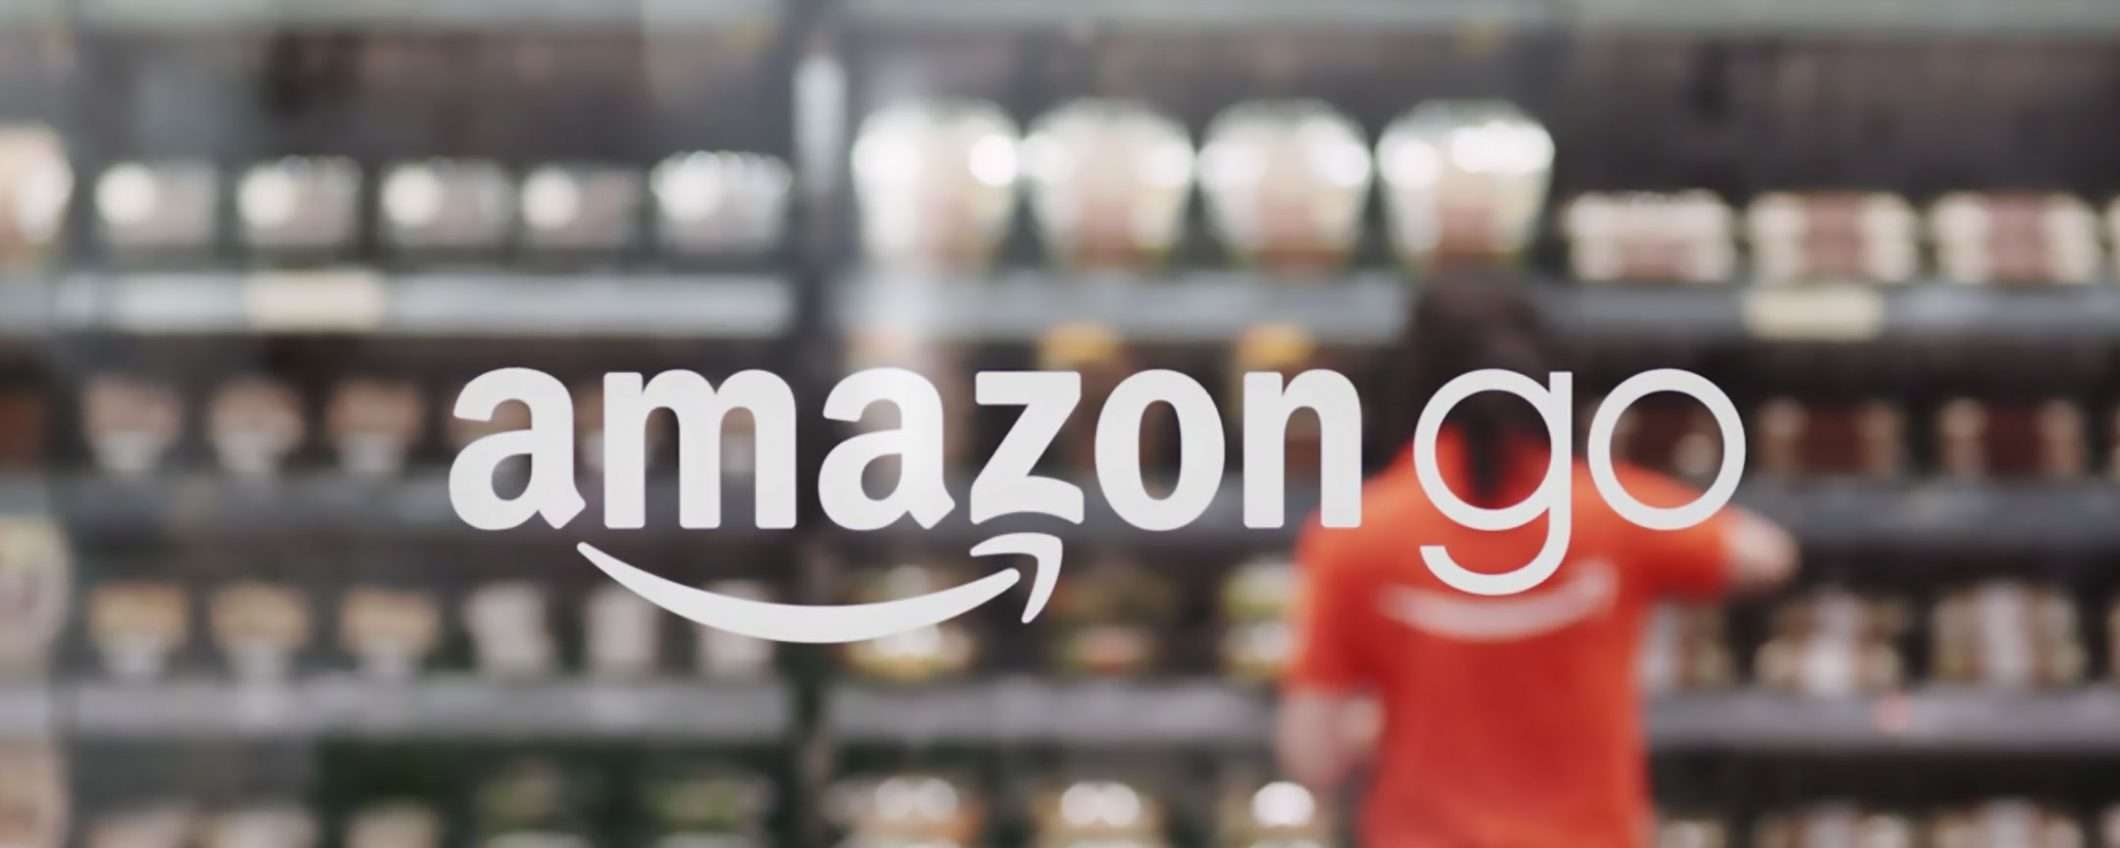 Amazon Go, chiudono 8 supermercati senza cassa